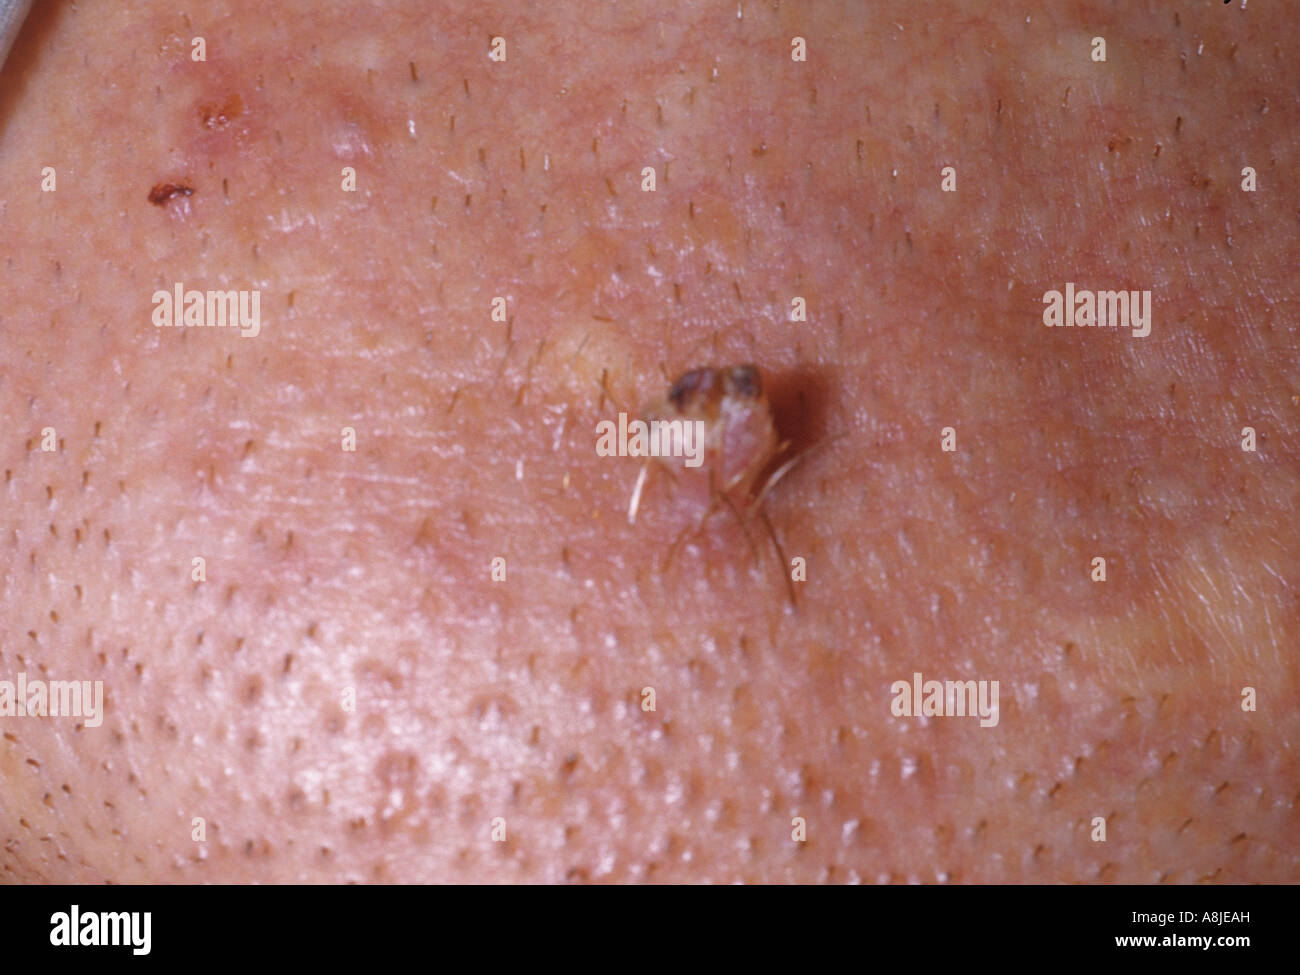 Verruca sul mento causate dall'HPV - Human Papilloma Virus Foto Stock